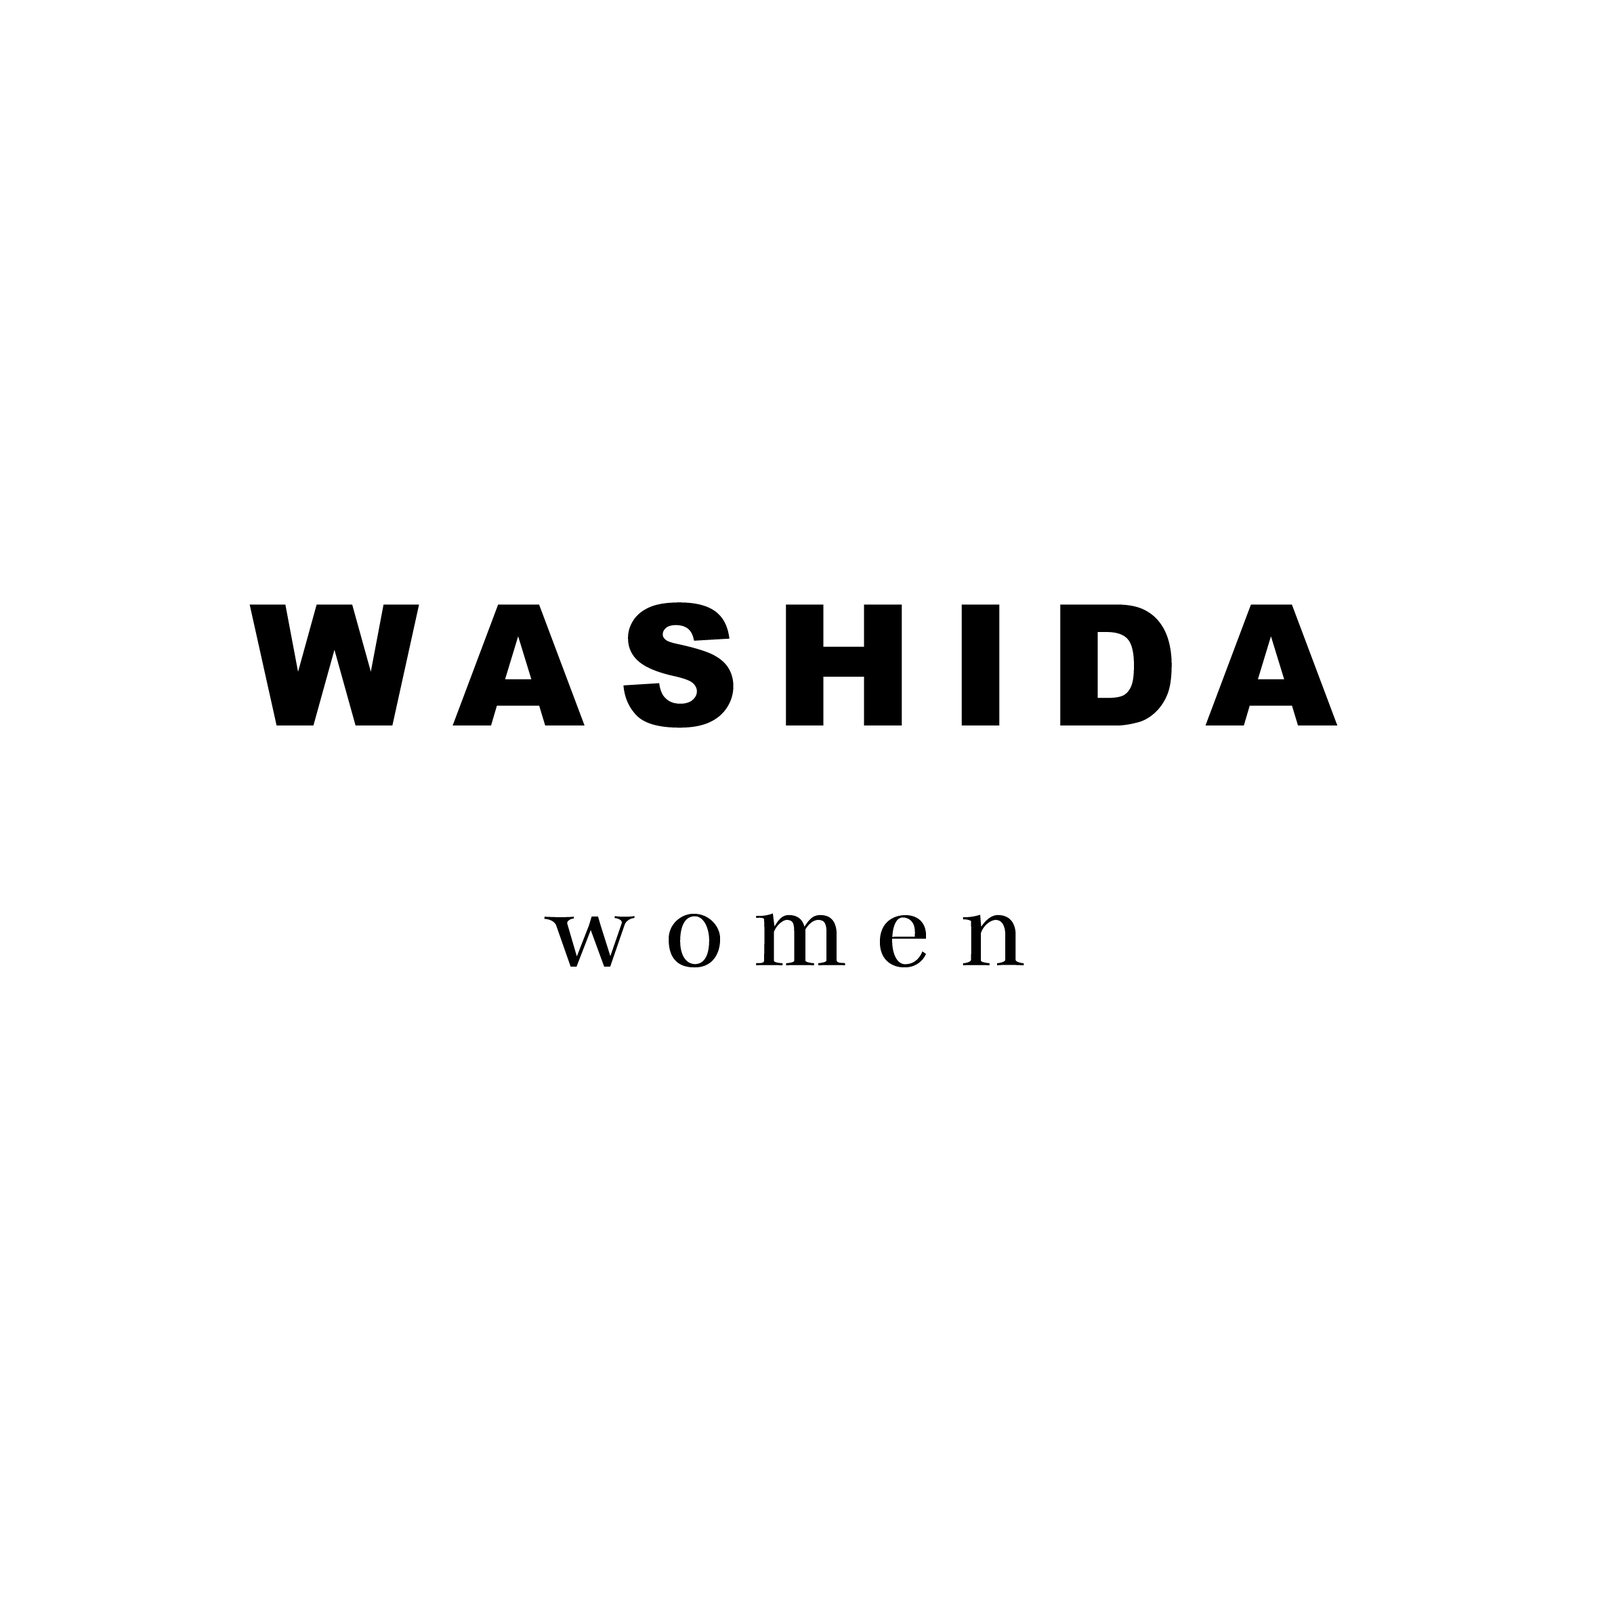 WASHIDA women